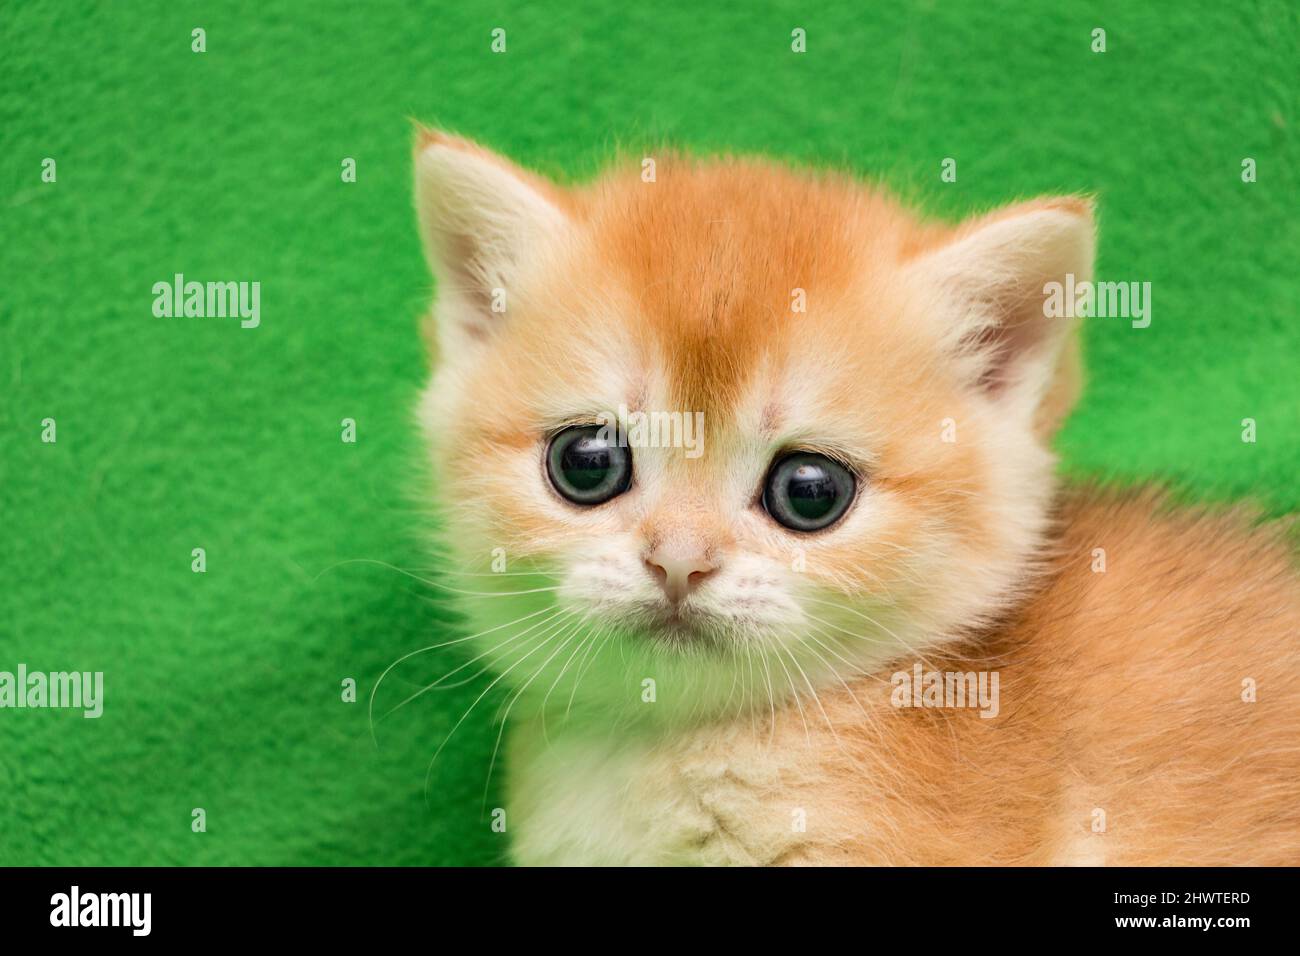 Muso gattino inglese in un mese, gatto colorazione Golden chinchilla BRI ny 12, età 1 mese Foto Stock